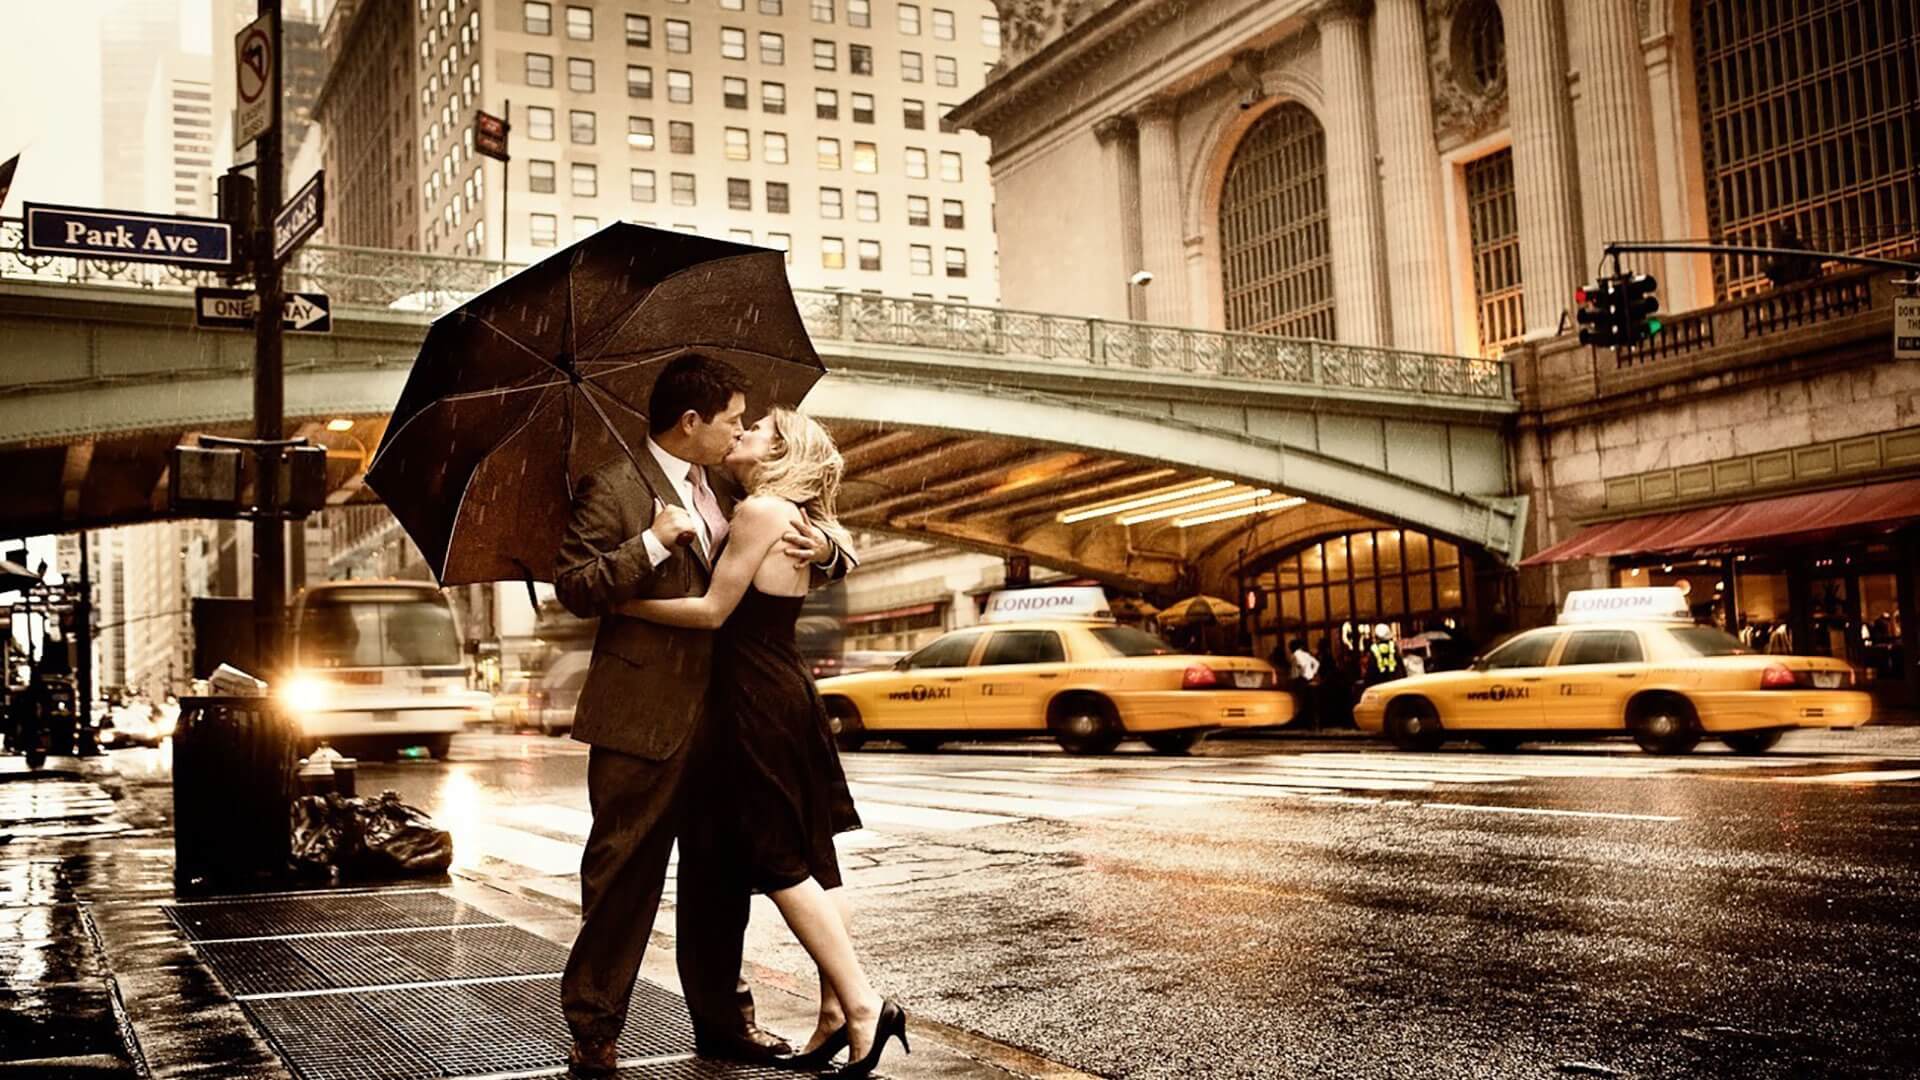 Romantic Kiss On Road Footpath - Love In The Rain - HD Wallpaper 